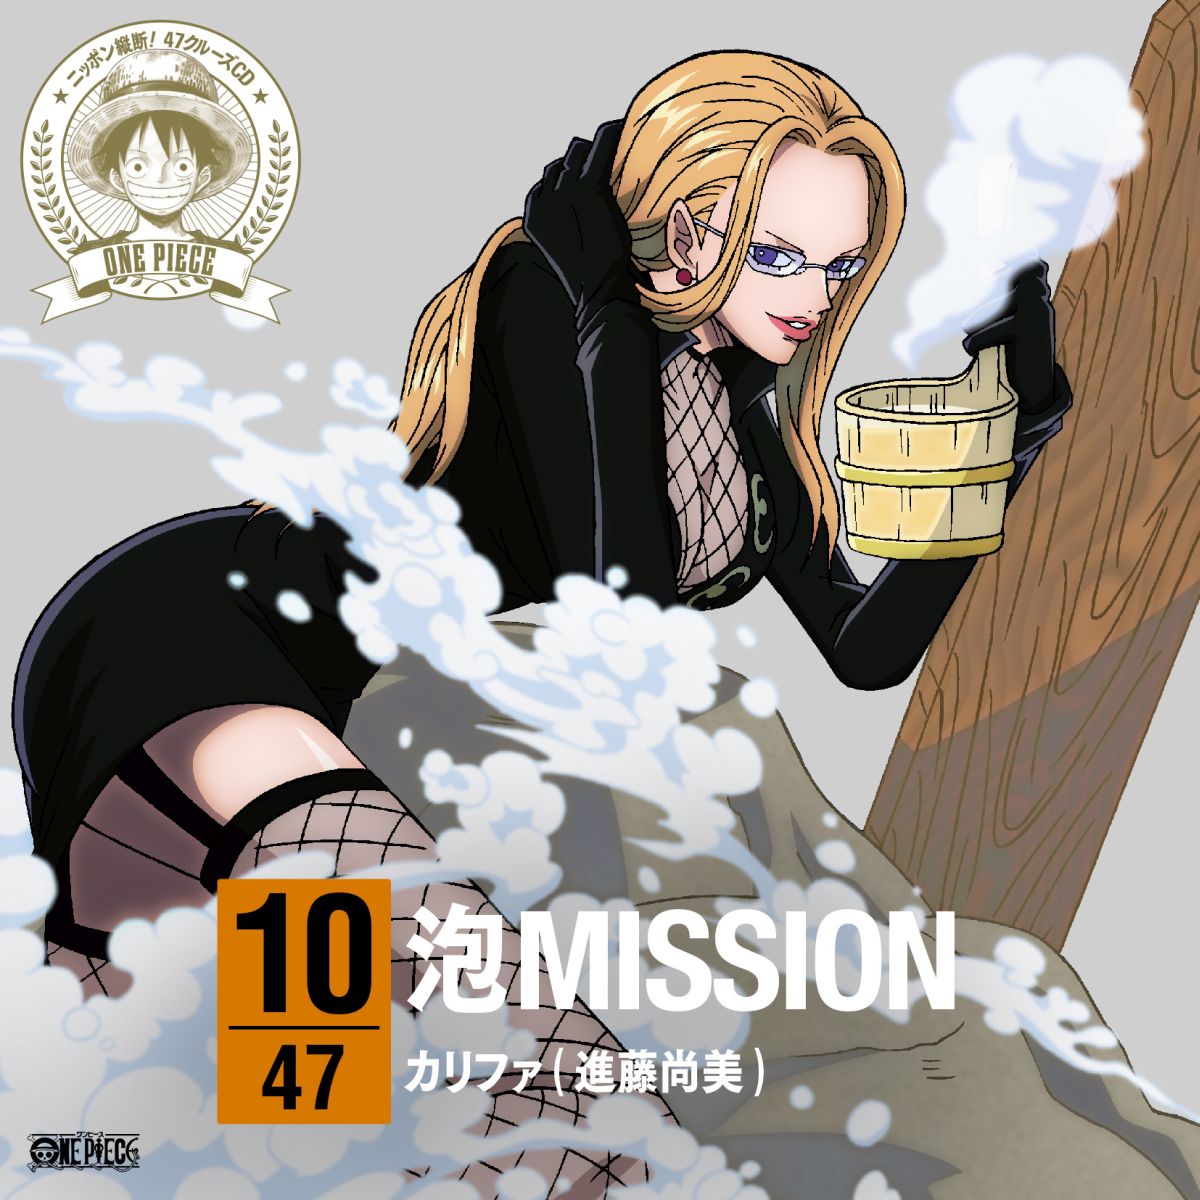 楽天ブックス One Piece ニッポン縦断 47クルーズcd In 群馬 泡mission カリファ Cd